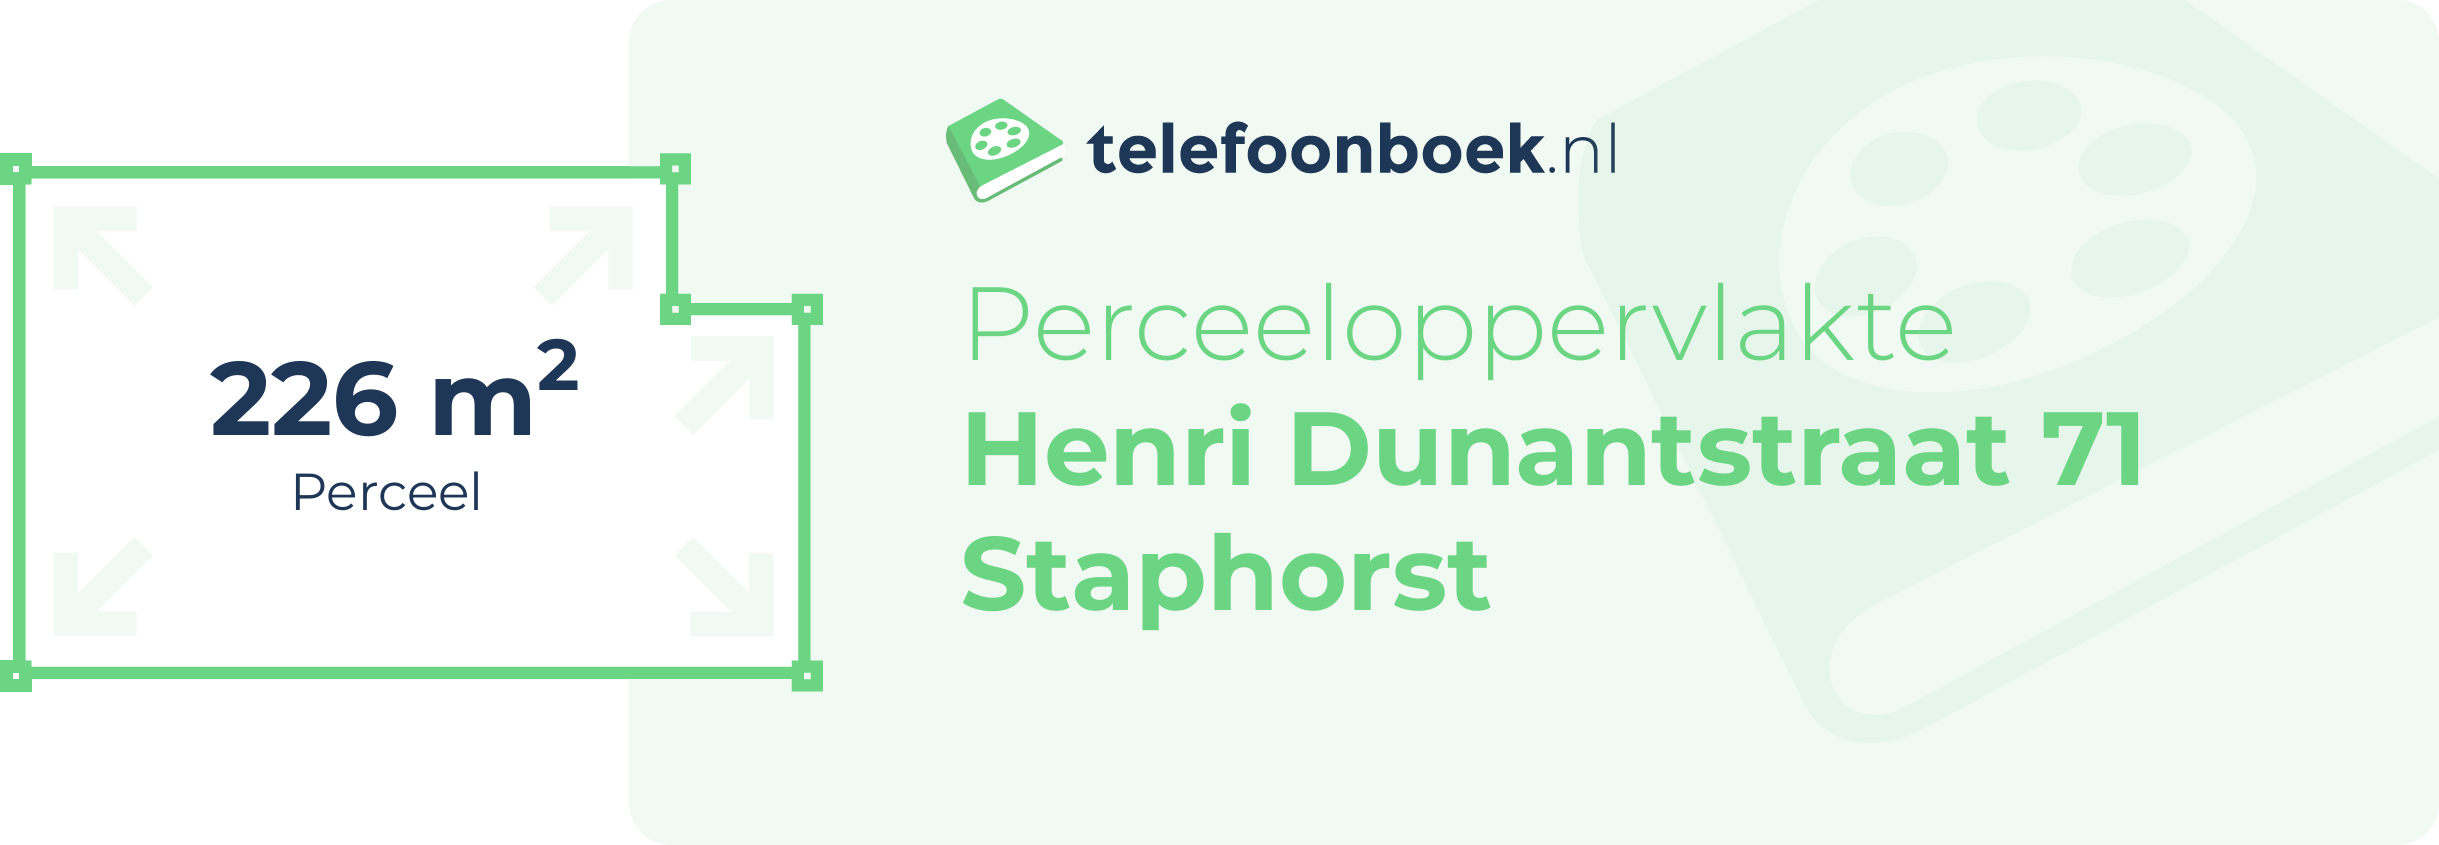 Perceeloppervlakte Henri Dunantstraat 71 Staphorst